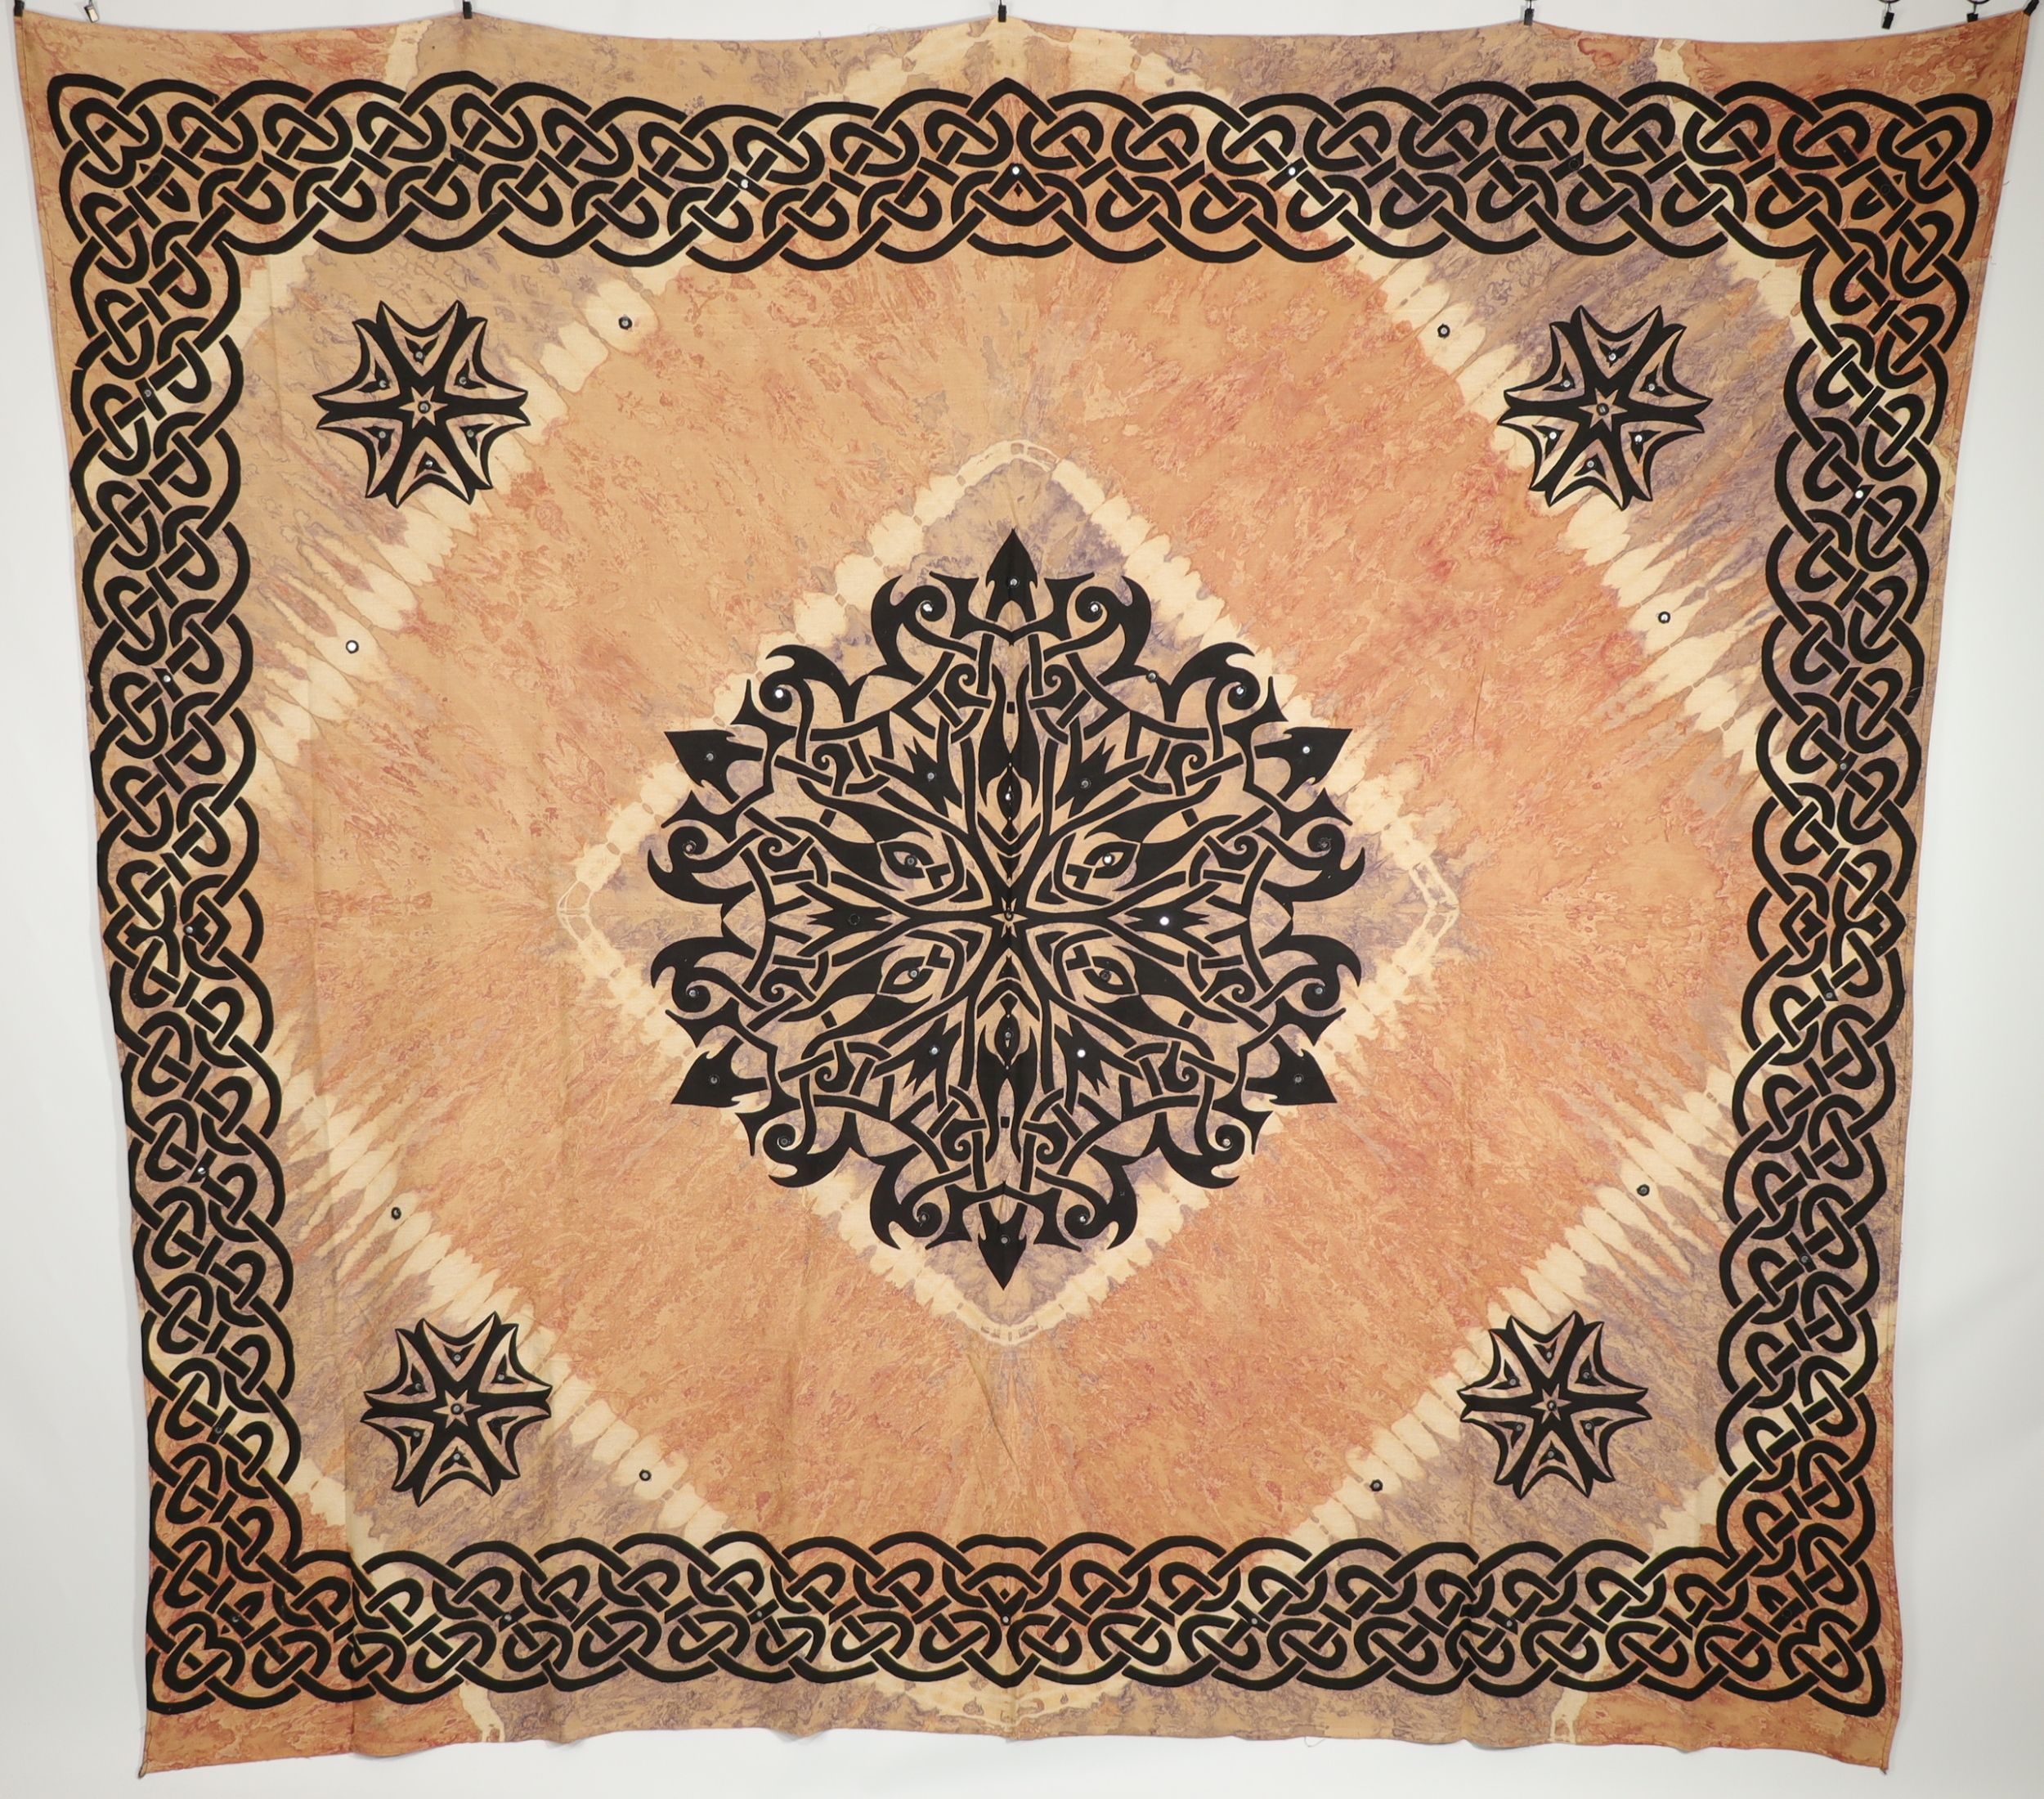 Wandtuch XXL 210x230 - keltischer Mandala Lotus - 100% Baumwolle - detailreicher indischer Druck - mehrfarbig Batik - dekoratives Tuch, Wandbild, Tagesdecke, Bedcover, Vorhang, Picknick-Decke, Strandtuch